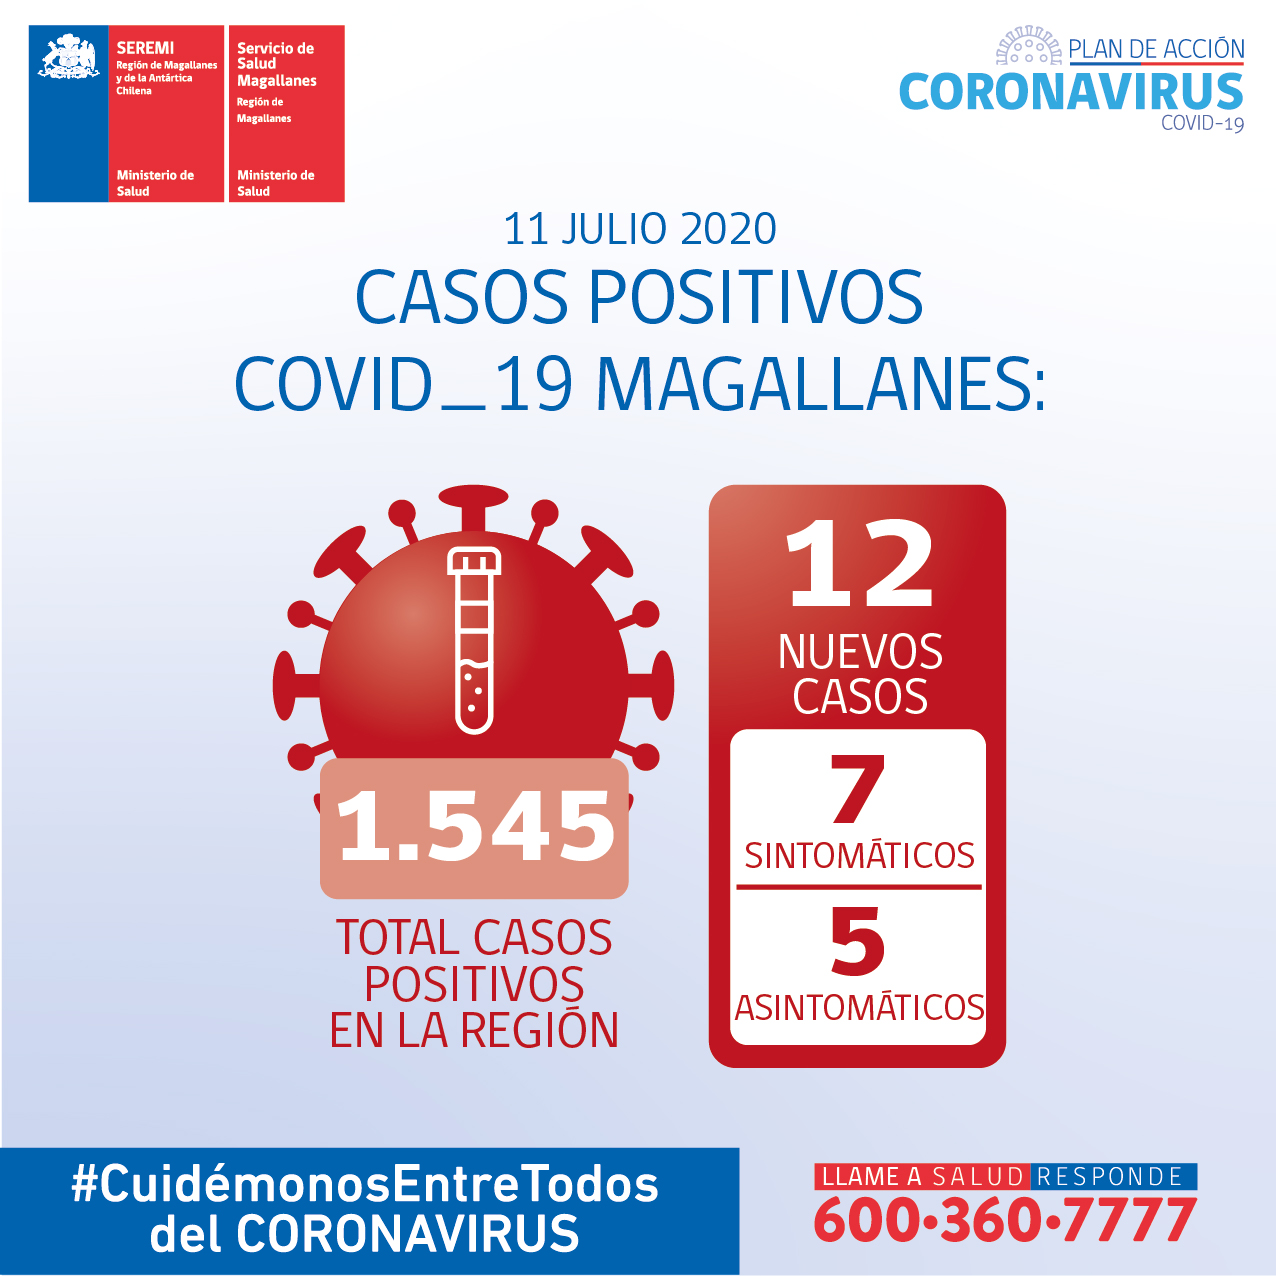 12 nuevos casos de Covid19 se registraron las recientes 24 horas en Magallanes